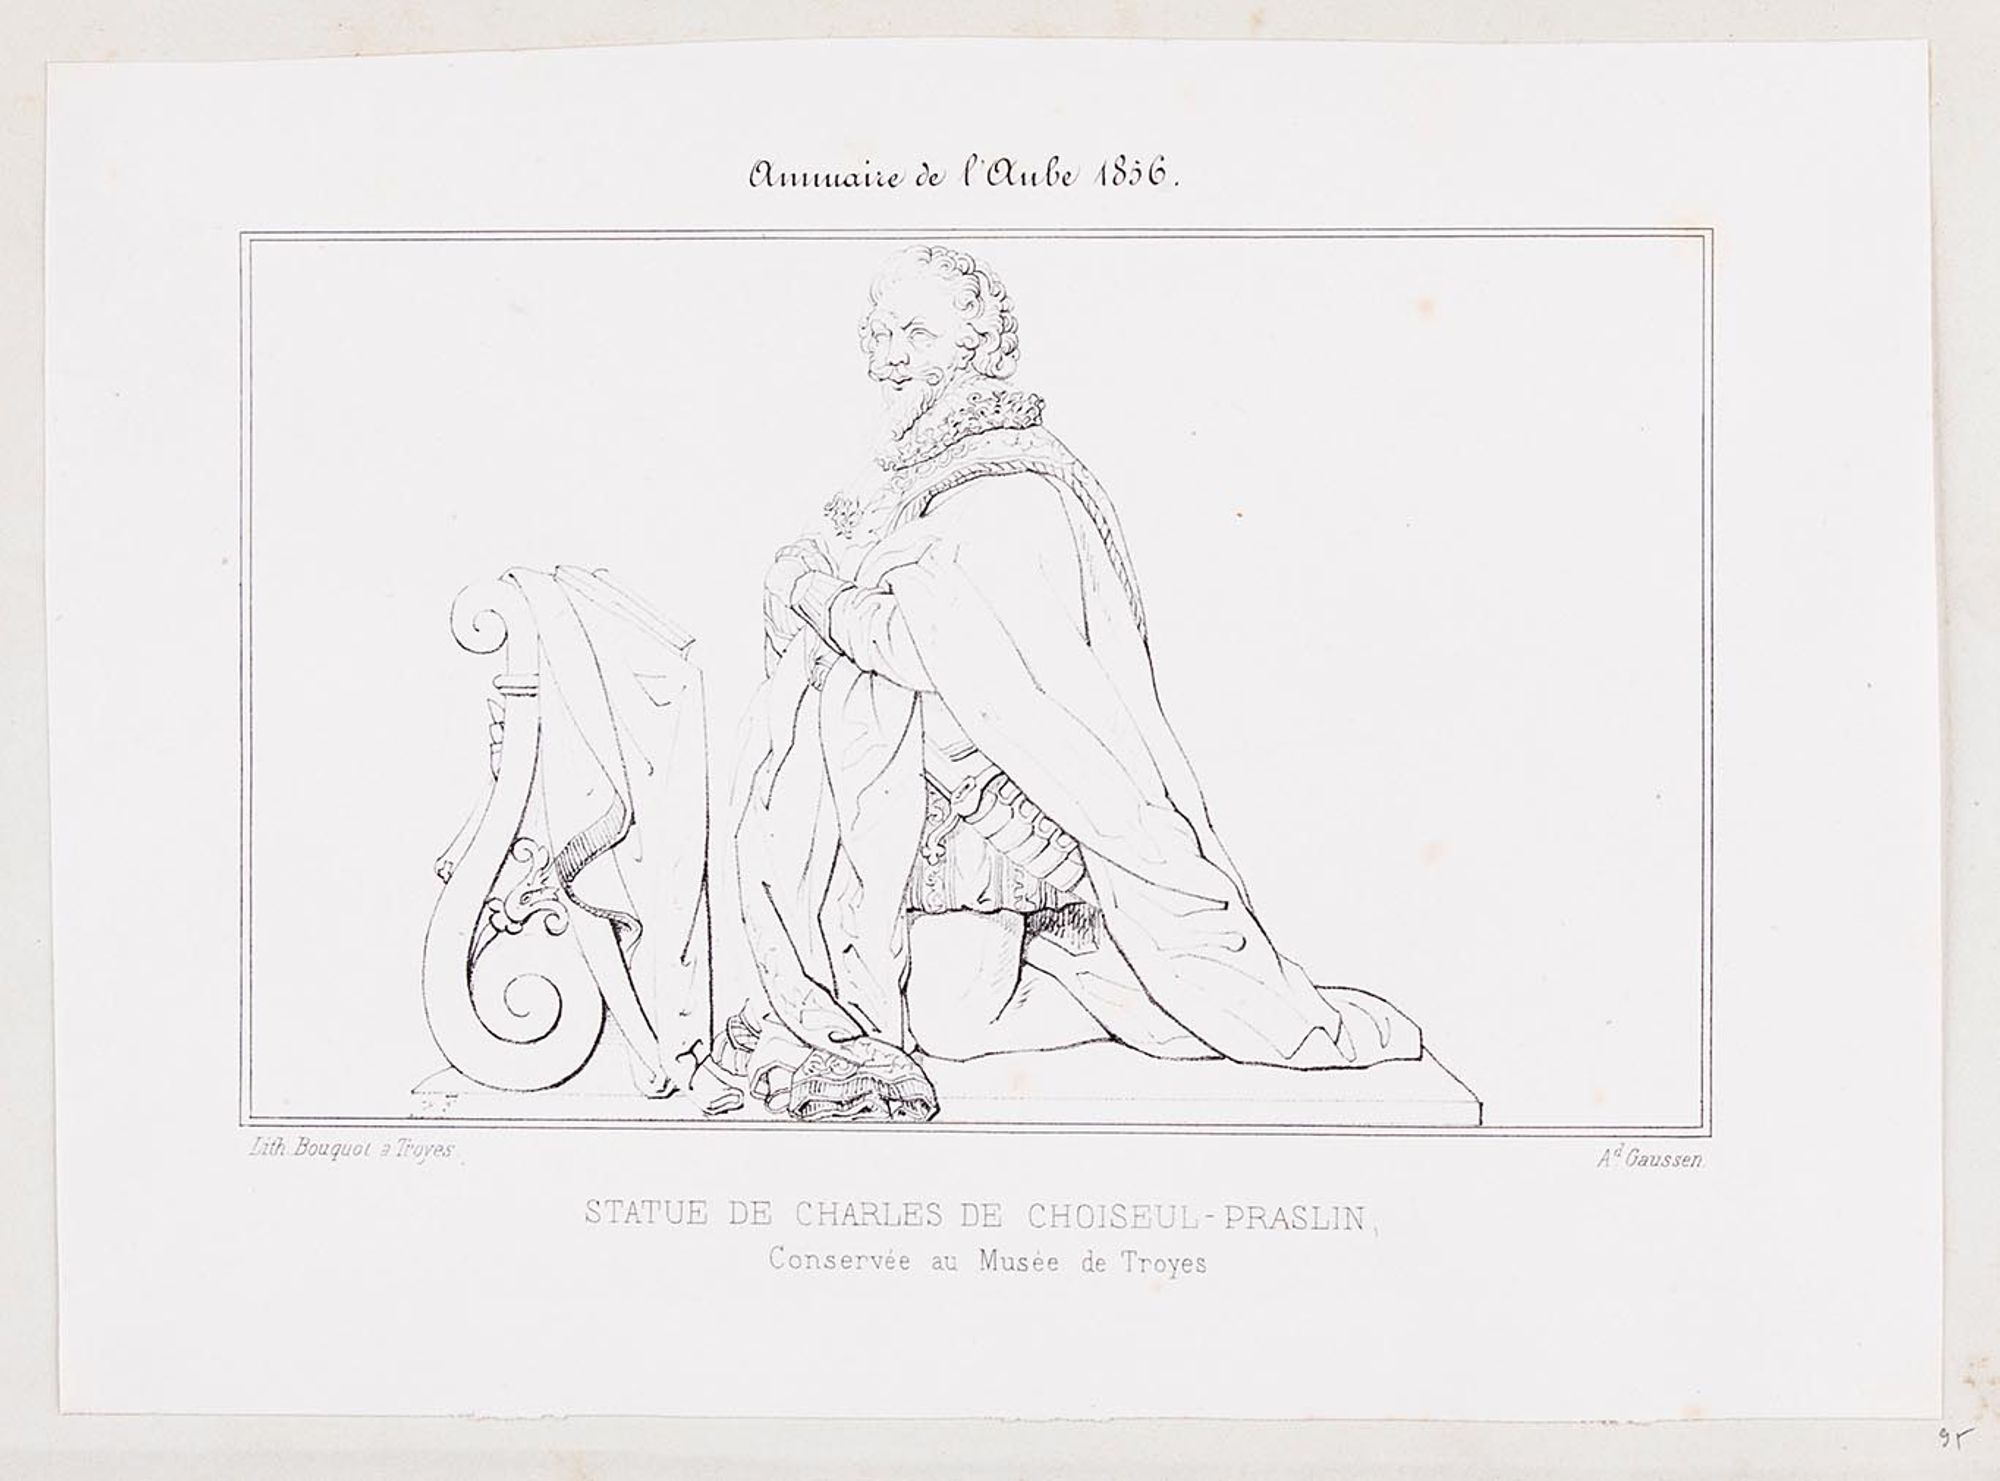 Lithographie. « Statue de Charles de Choiseul-Praslin conservée au musée de Troyes ». Extrait de l'Annuaire de l'Aube, Troyes, 1856.